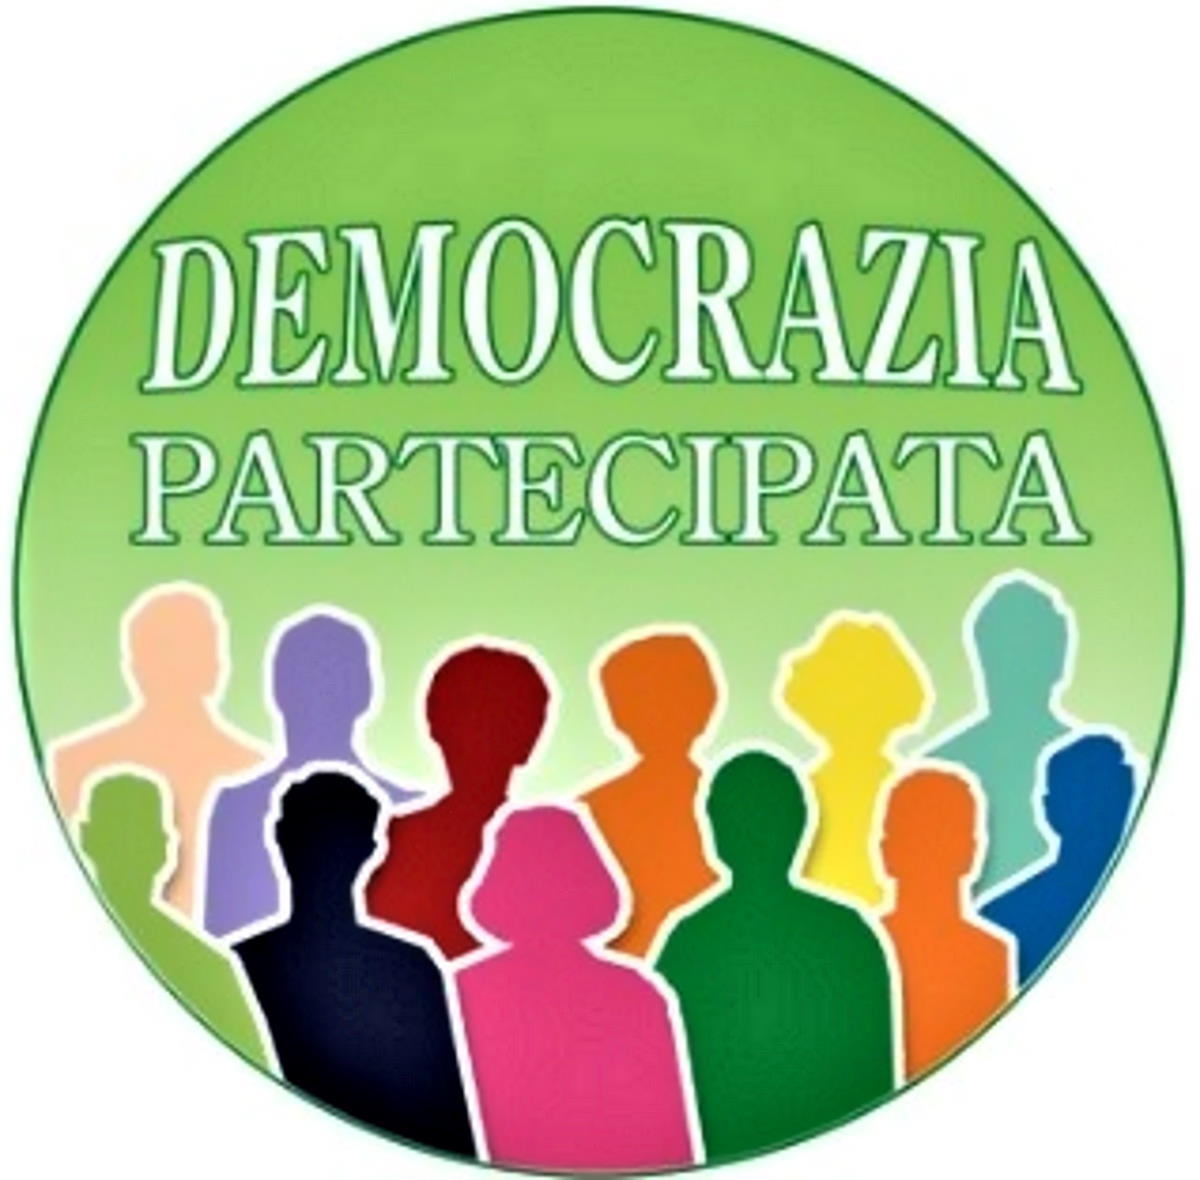 Milazzo (ME) – Democrazia partecipata, i cittadini hanno scelta fra 4 proposte